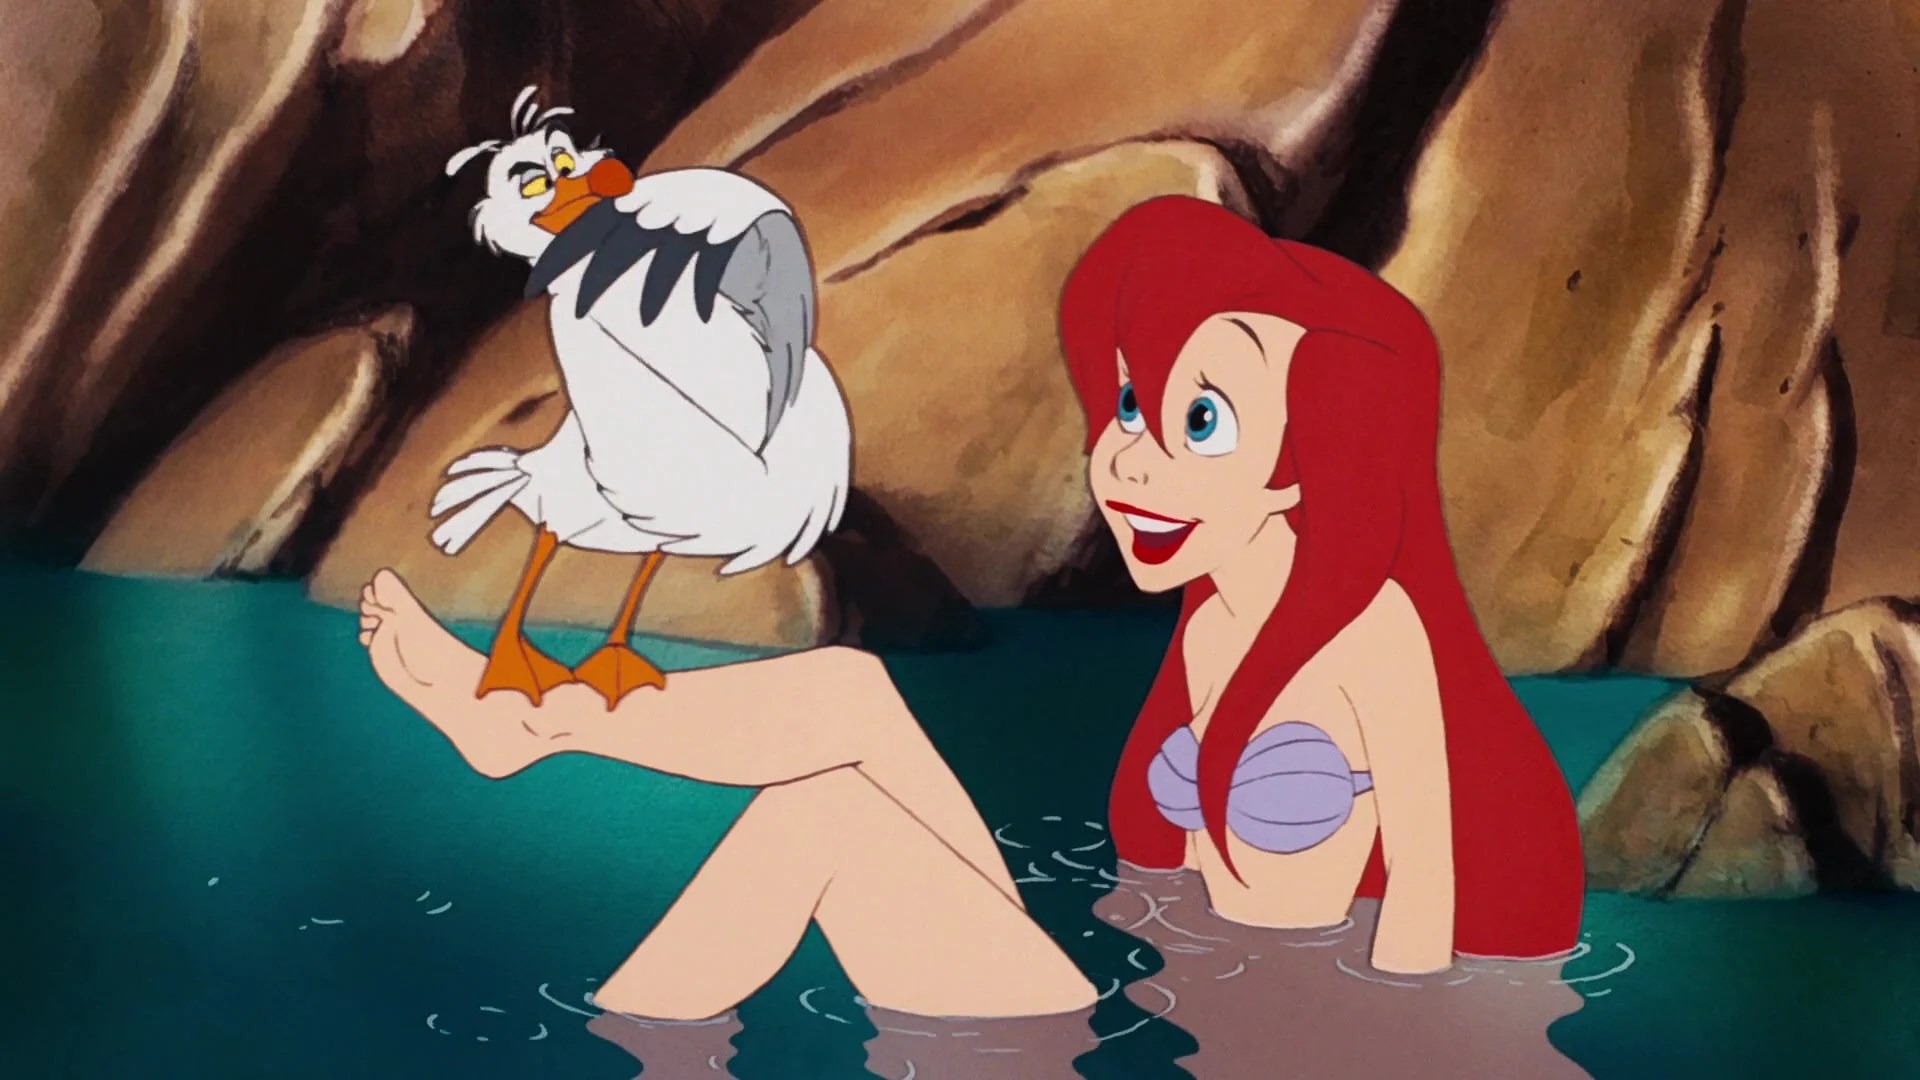 Ariel (Jodi Benson) shows off her new legs to Scuttle (Buddy Hackett) in The Little Mermaid (1989), Disney